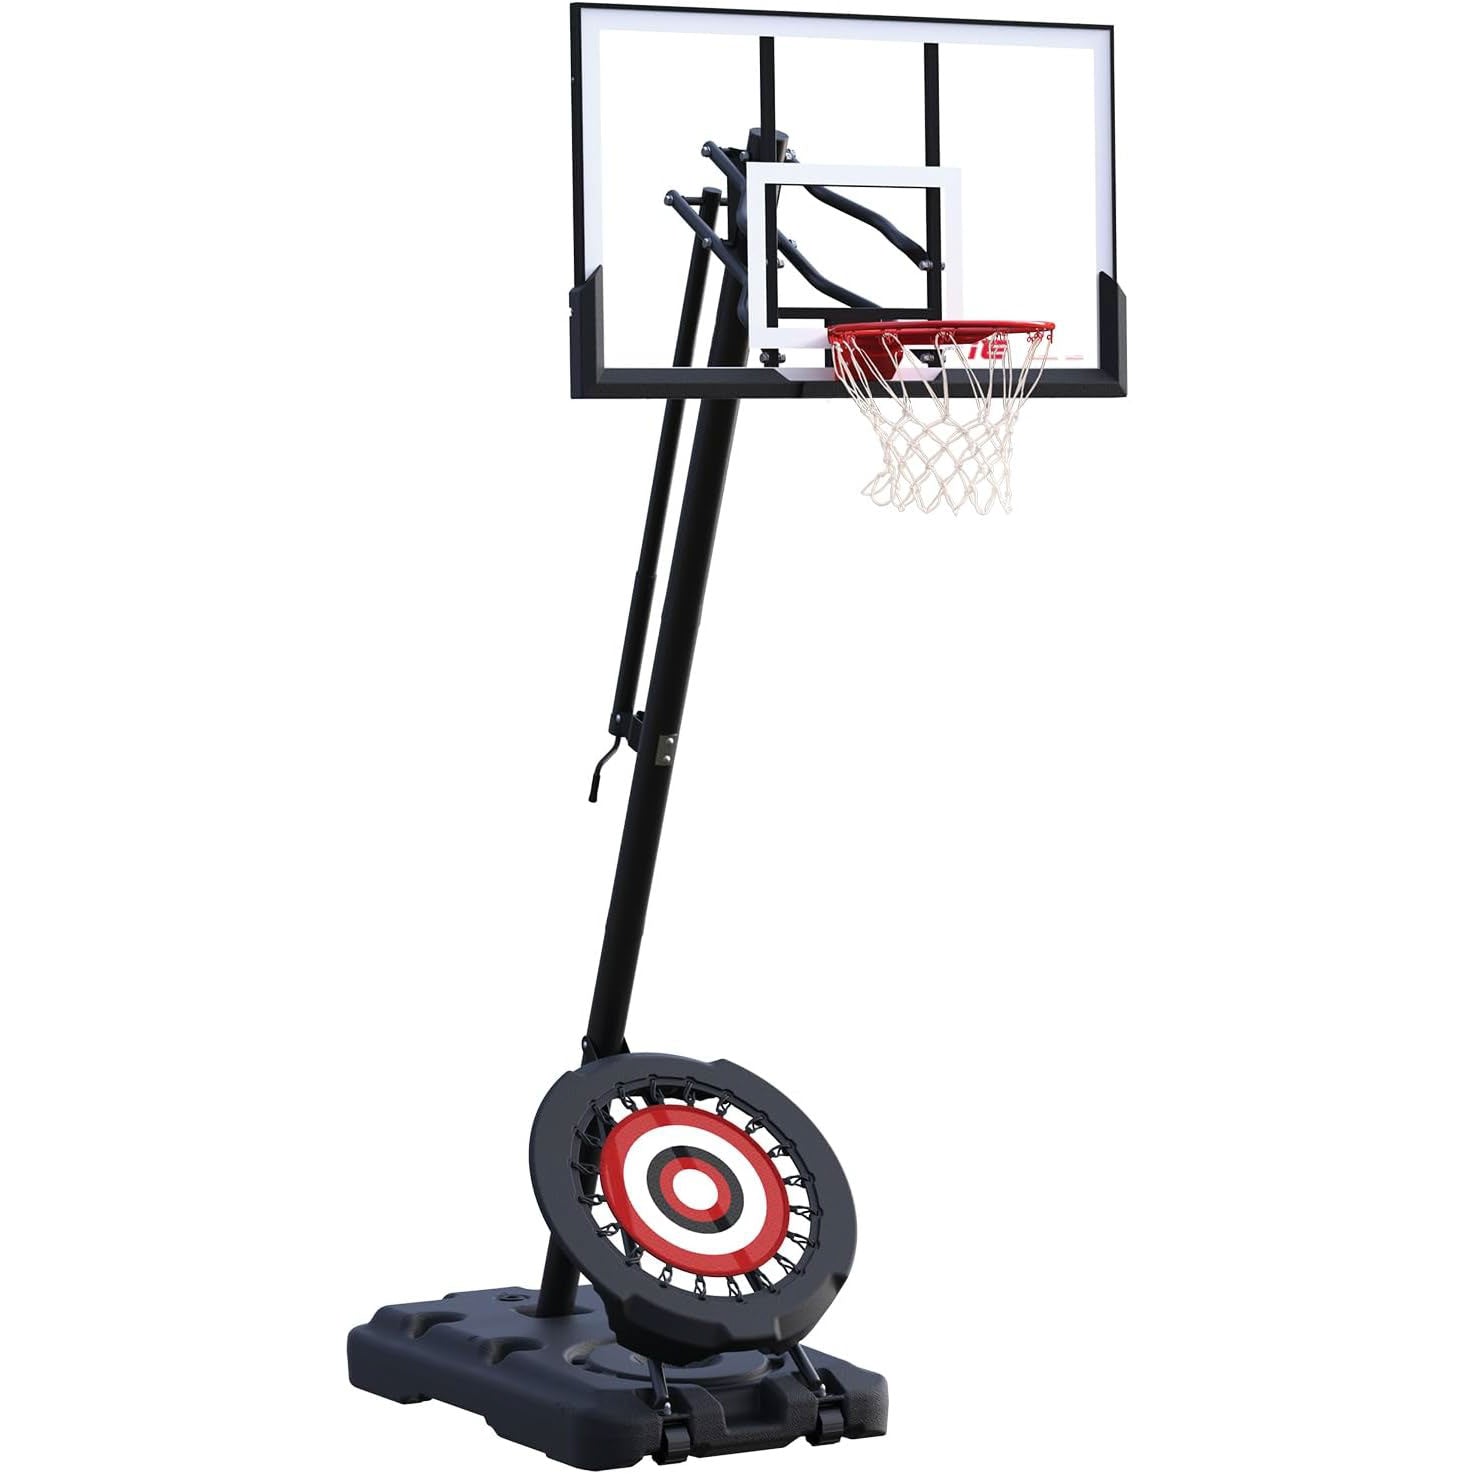 50" Backboard Basketball Hoop